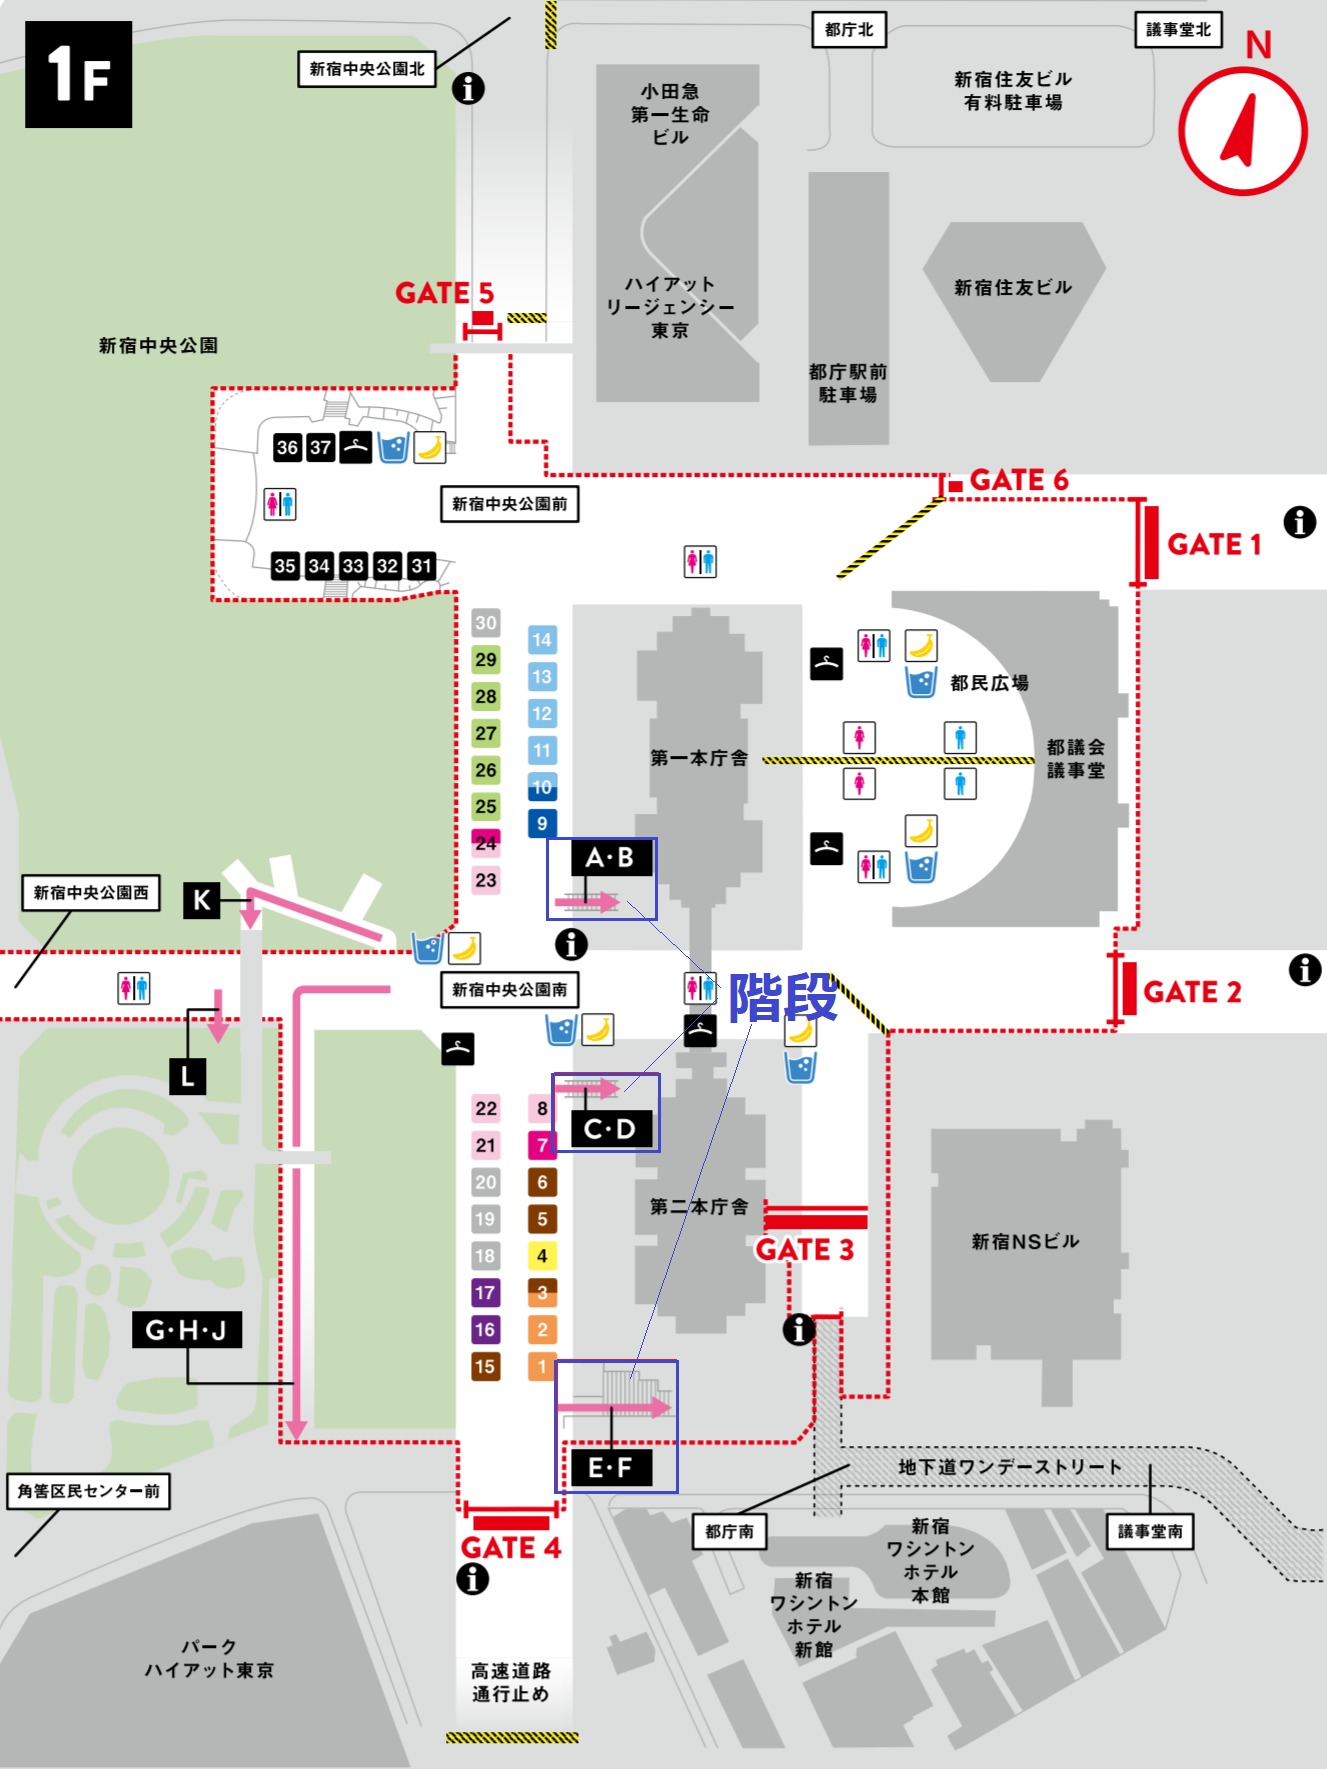 東京マラソンスタート地点 1階詳細マップ（GATE・更衣室・荷物預け・トイレ・給食・給水）